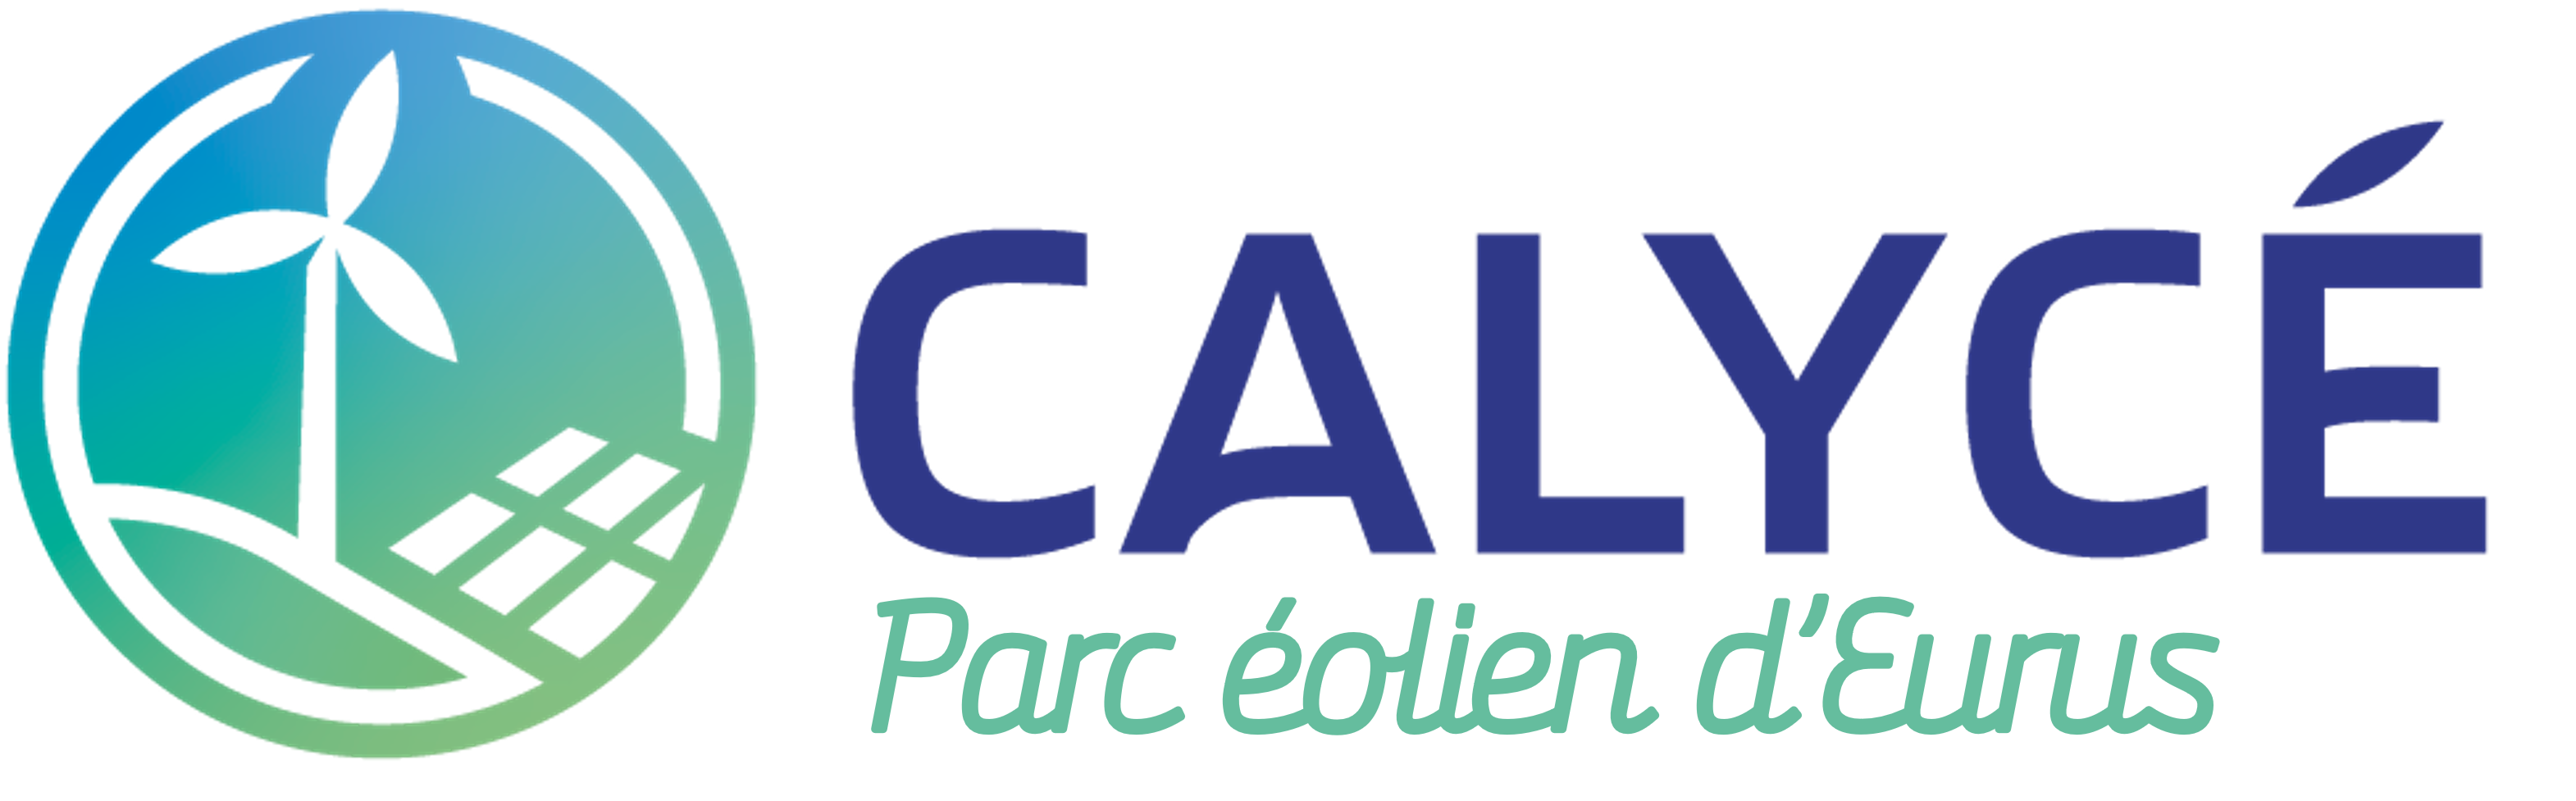 PARC ÉOLIEN D'EURUS Logo